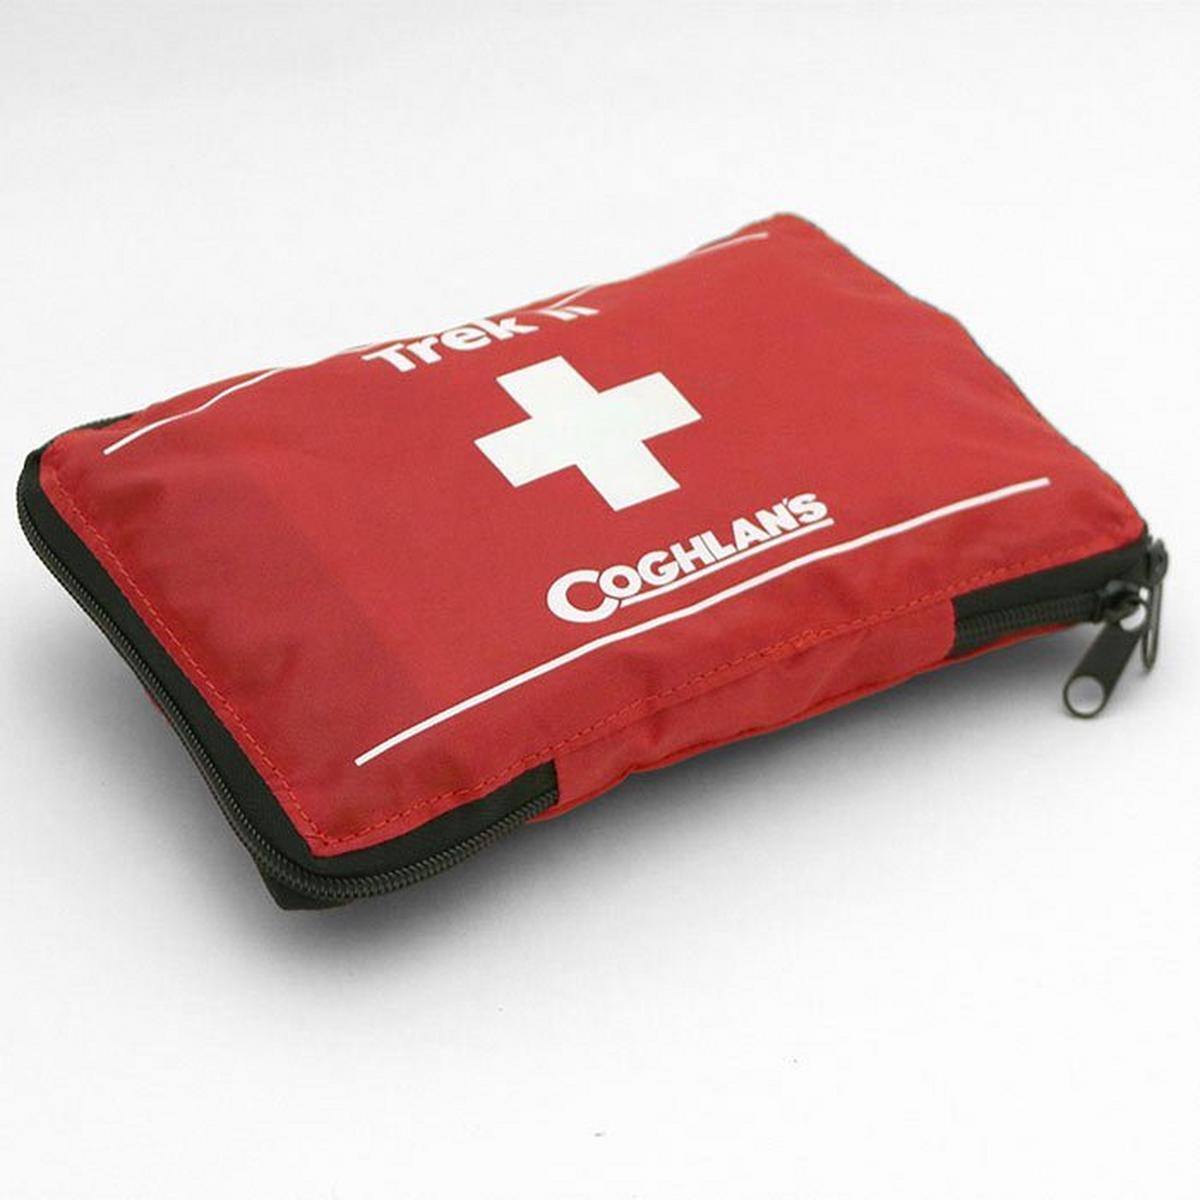 Trek II First Aid Kit